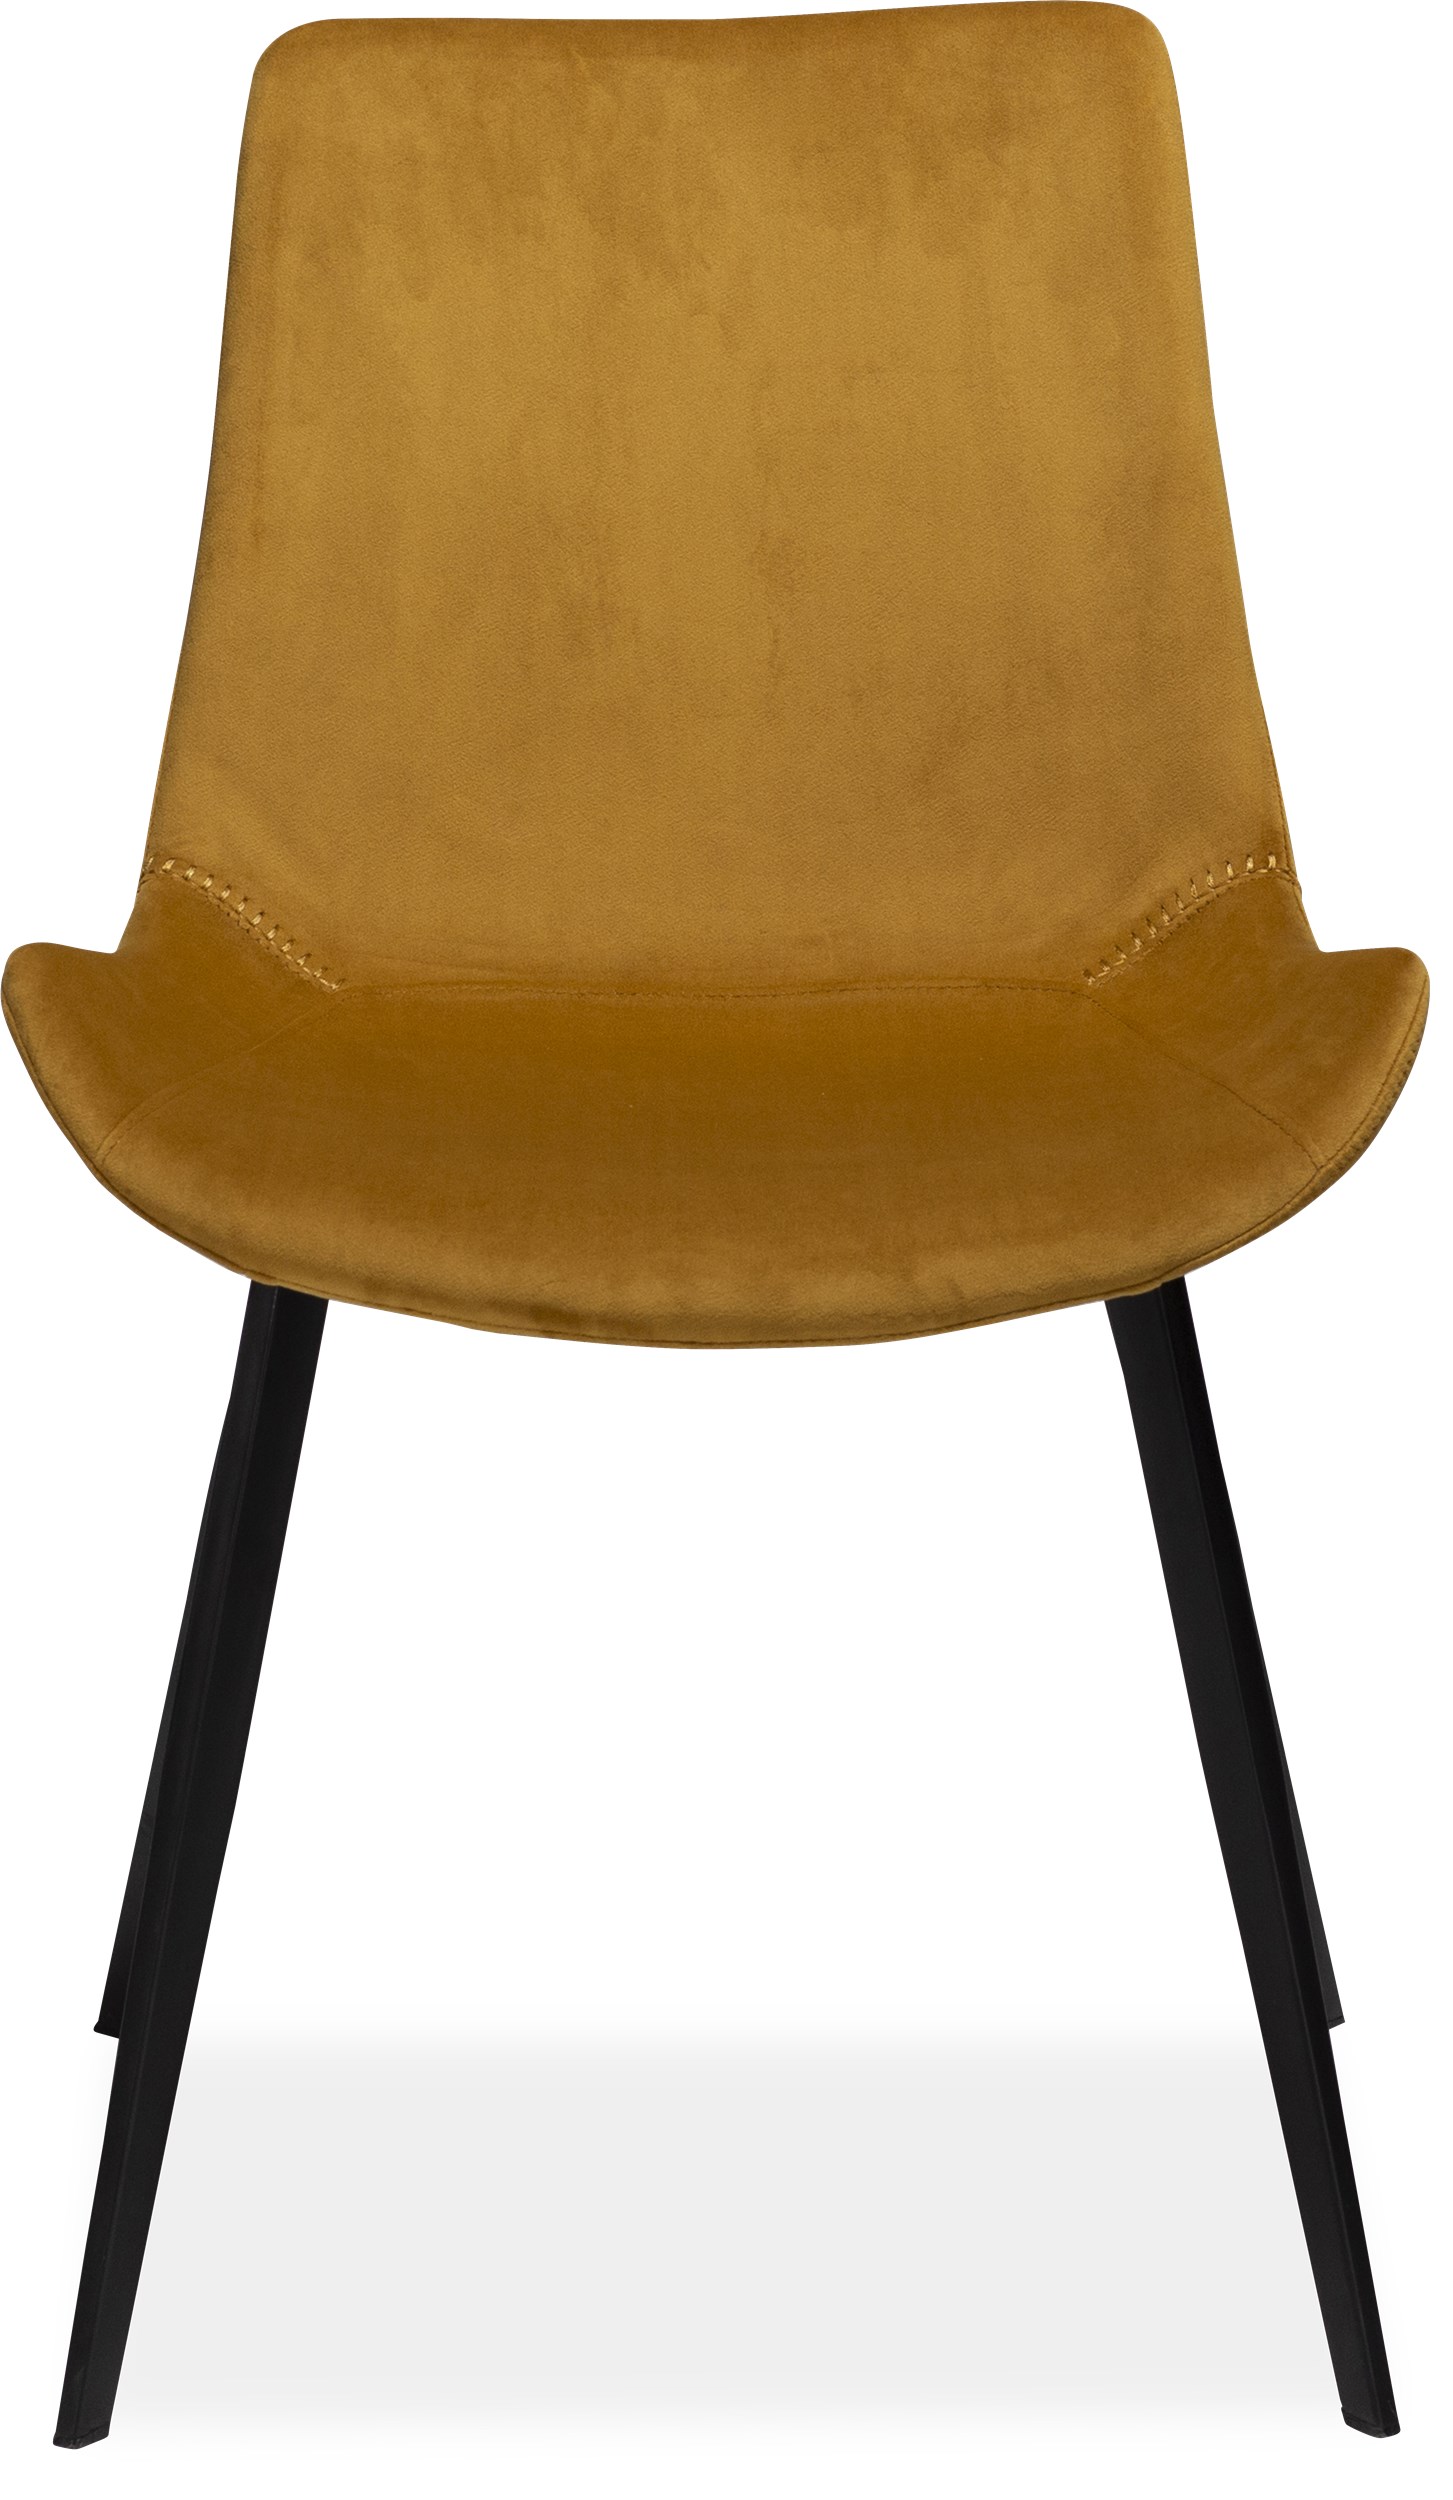 Hype Spisebordsstol - sæde i mustard yellow velour og ben i sortlakeret metal